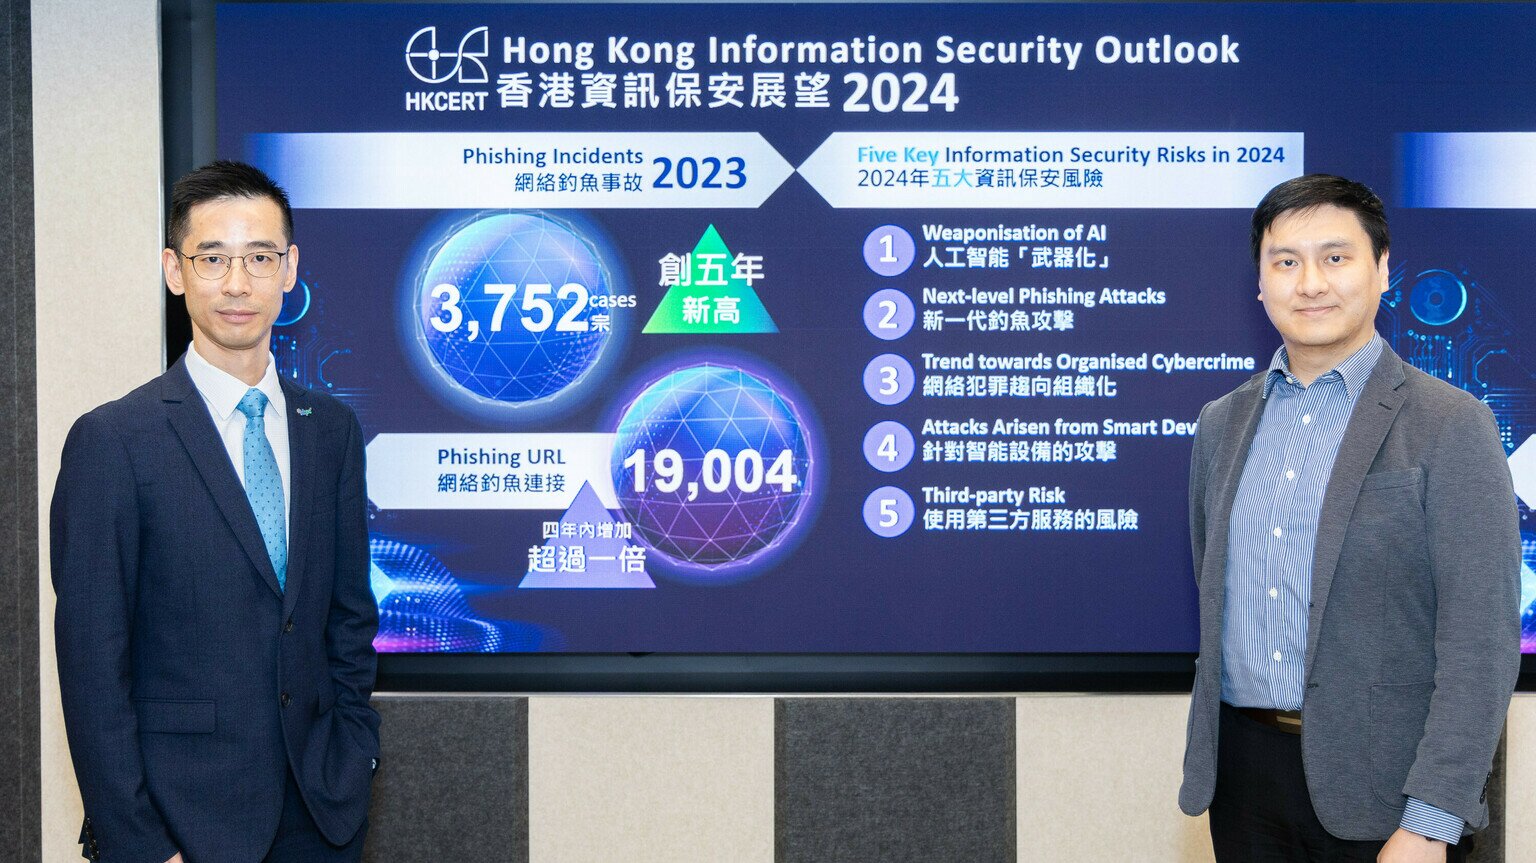 HKCERT發表年度資訊保安數據及預測  新一代釣魚攻擊真偽難辨 黑客挪用人工智能犯案將成新趨勢